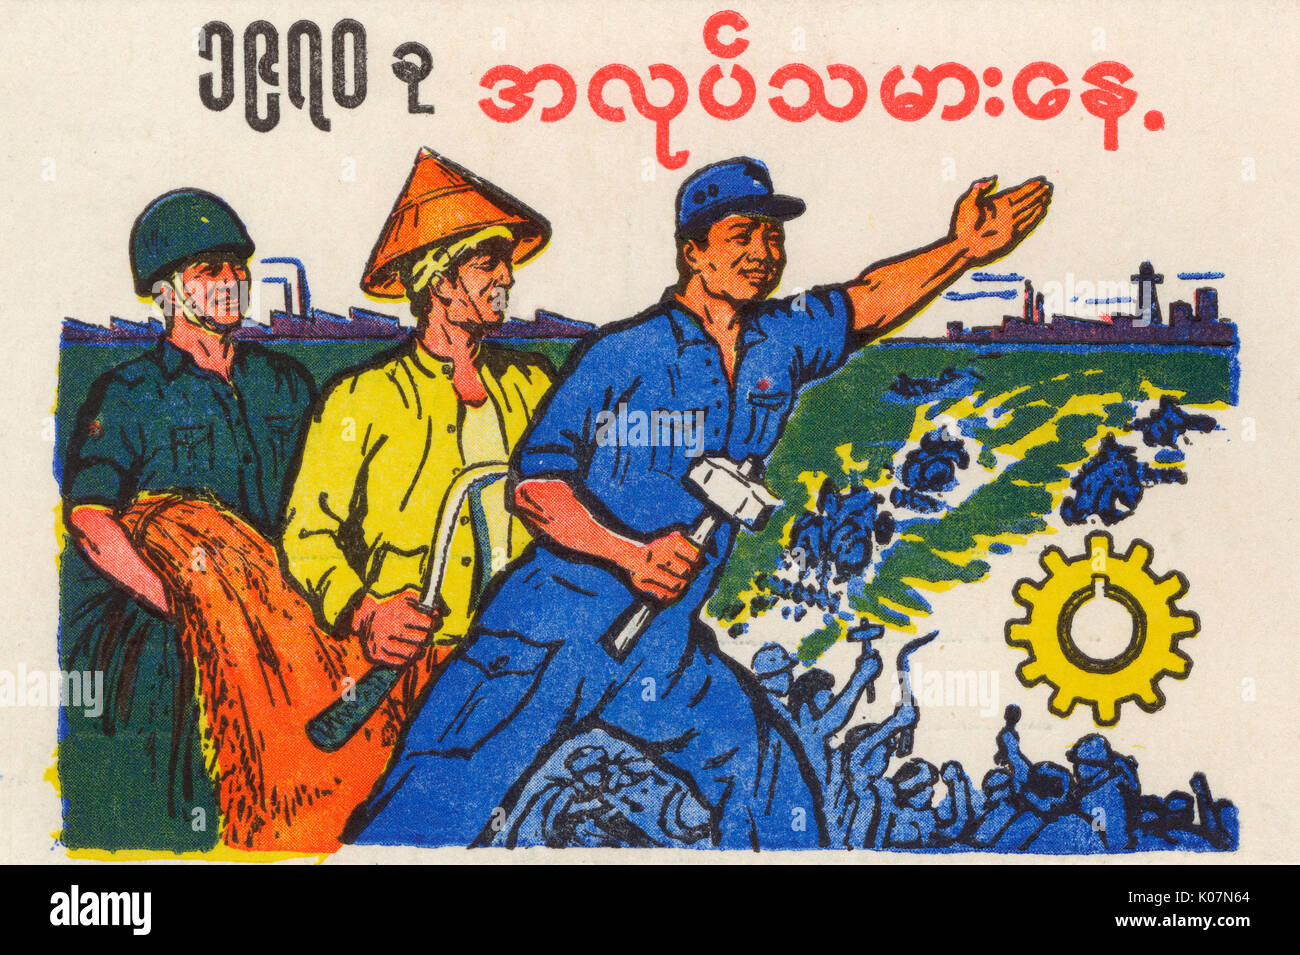 Birma (heute Myanmar) - Sozialistische Propaganda Postkarte aus den frühen Jahren des sozialistischen Staates in Birma. Die Karte scheint zu sein, eine glückliche Einheit zwischen einem Soldaten, die das Militär (es war Ne Win Militärregime die Macht durch einen Staatsstreich im Jahr 1962 beschlagnahmt), einer ländlichen Bauern und Arbeiter. Die BSPP (Burma Socialist Programme Party) befürwortet ein Programm der "; birmanischen Weg zum Sozialismus"; die beiden Kommunistischen und buddhistische Einflüsse verkörpert. Datum: ca. 1963 Stockfoto